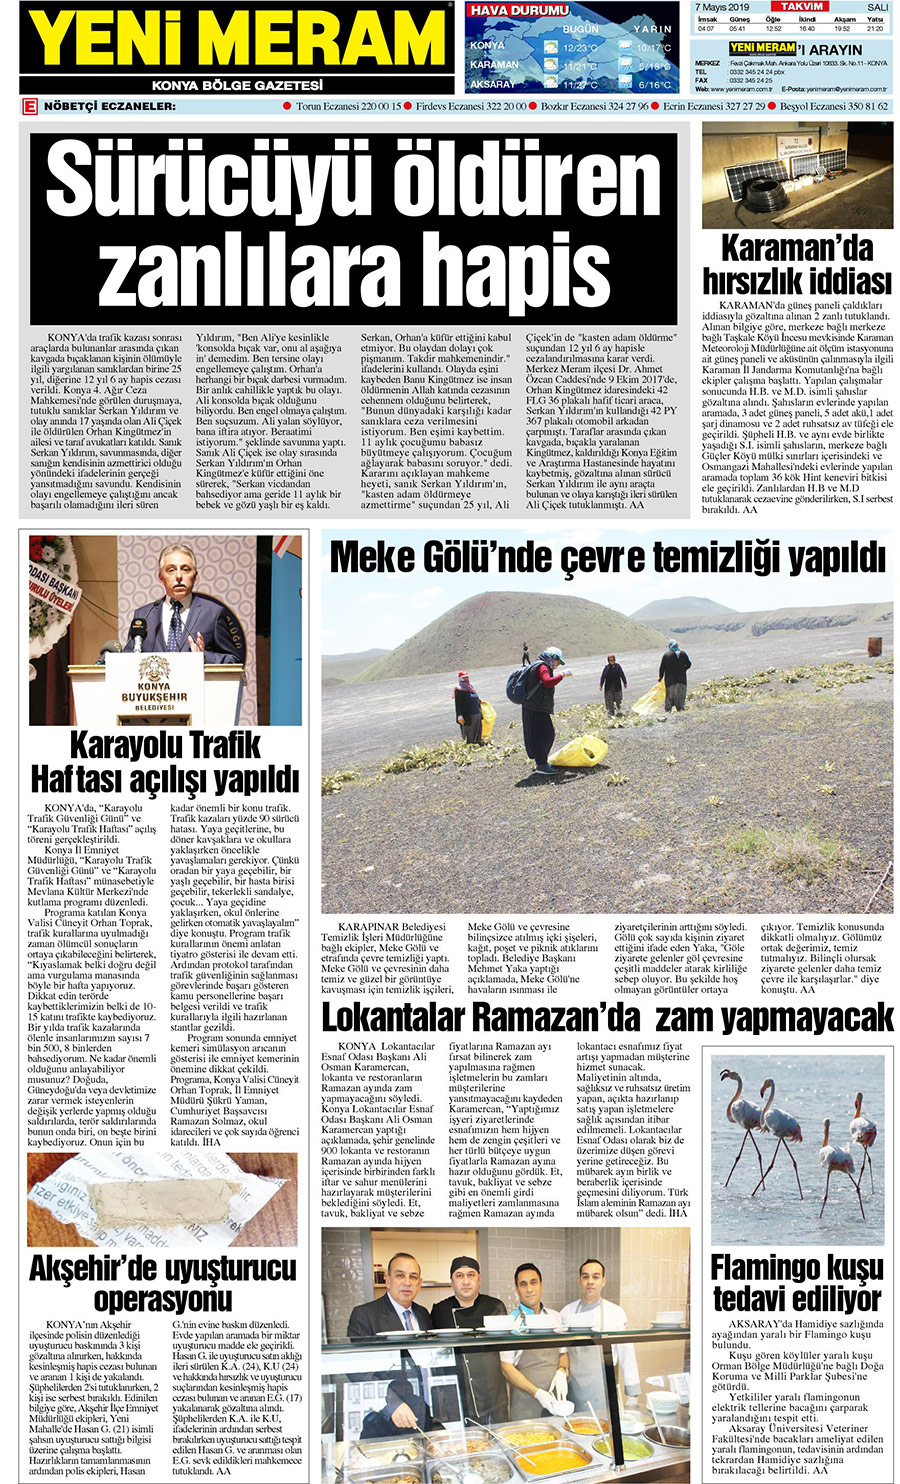 7 Mayıs 2019 Yeni Meram Gazetesi